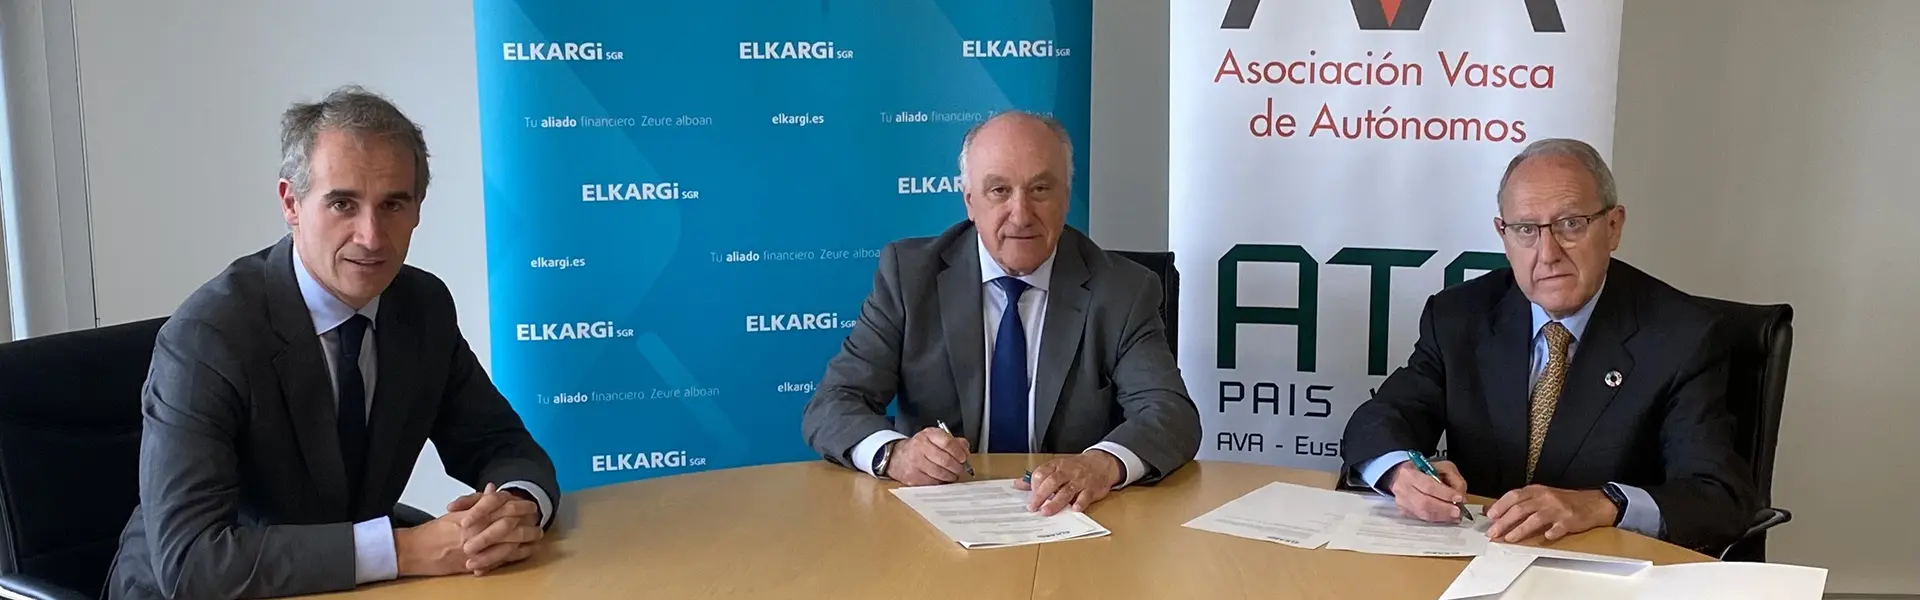 Elkargi y AVA ofrecen acceso a financiación a los autónomos vascos ultimas noticias